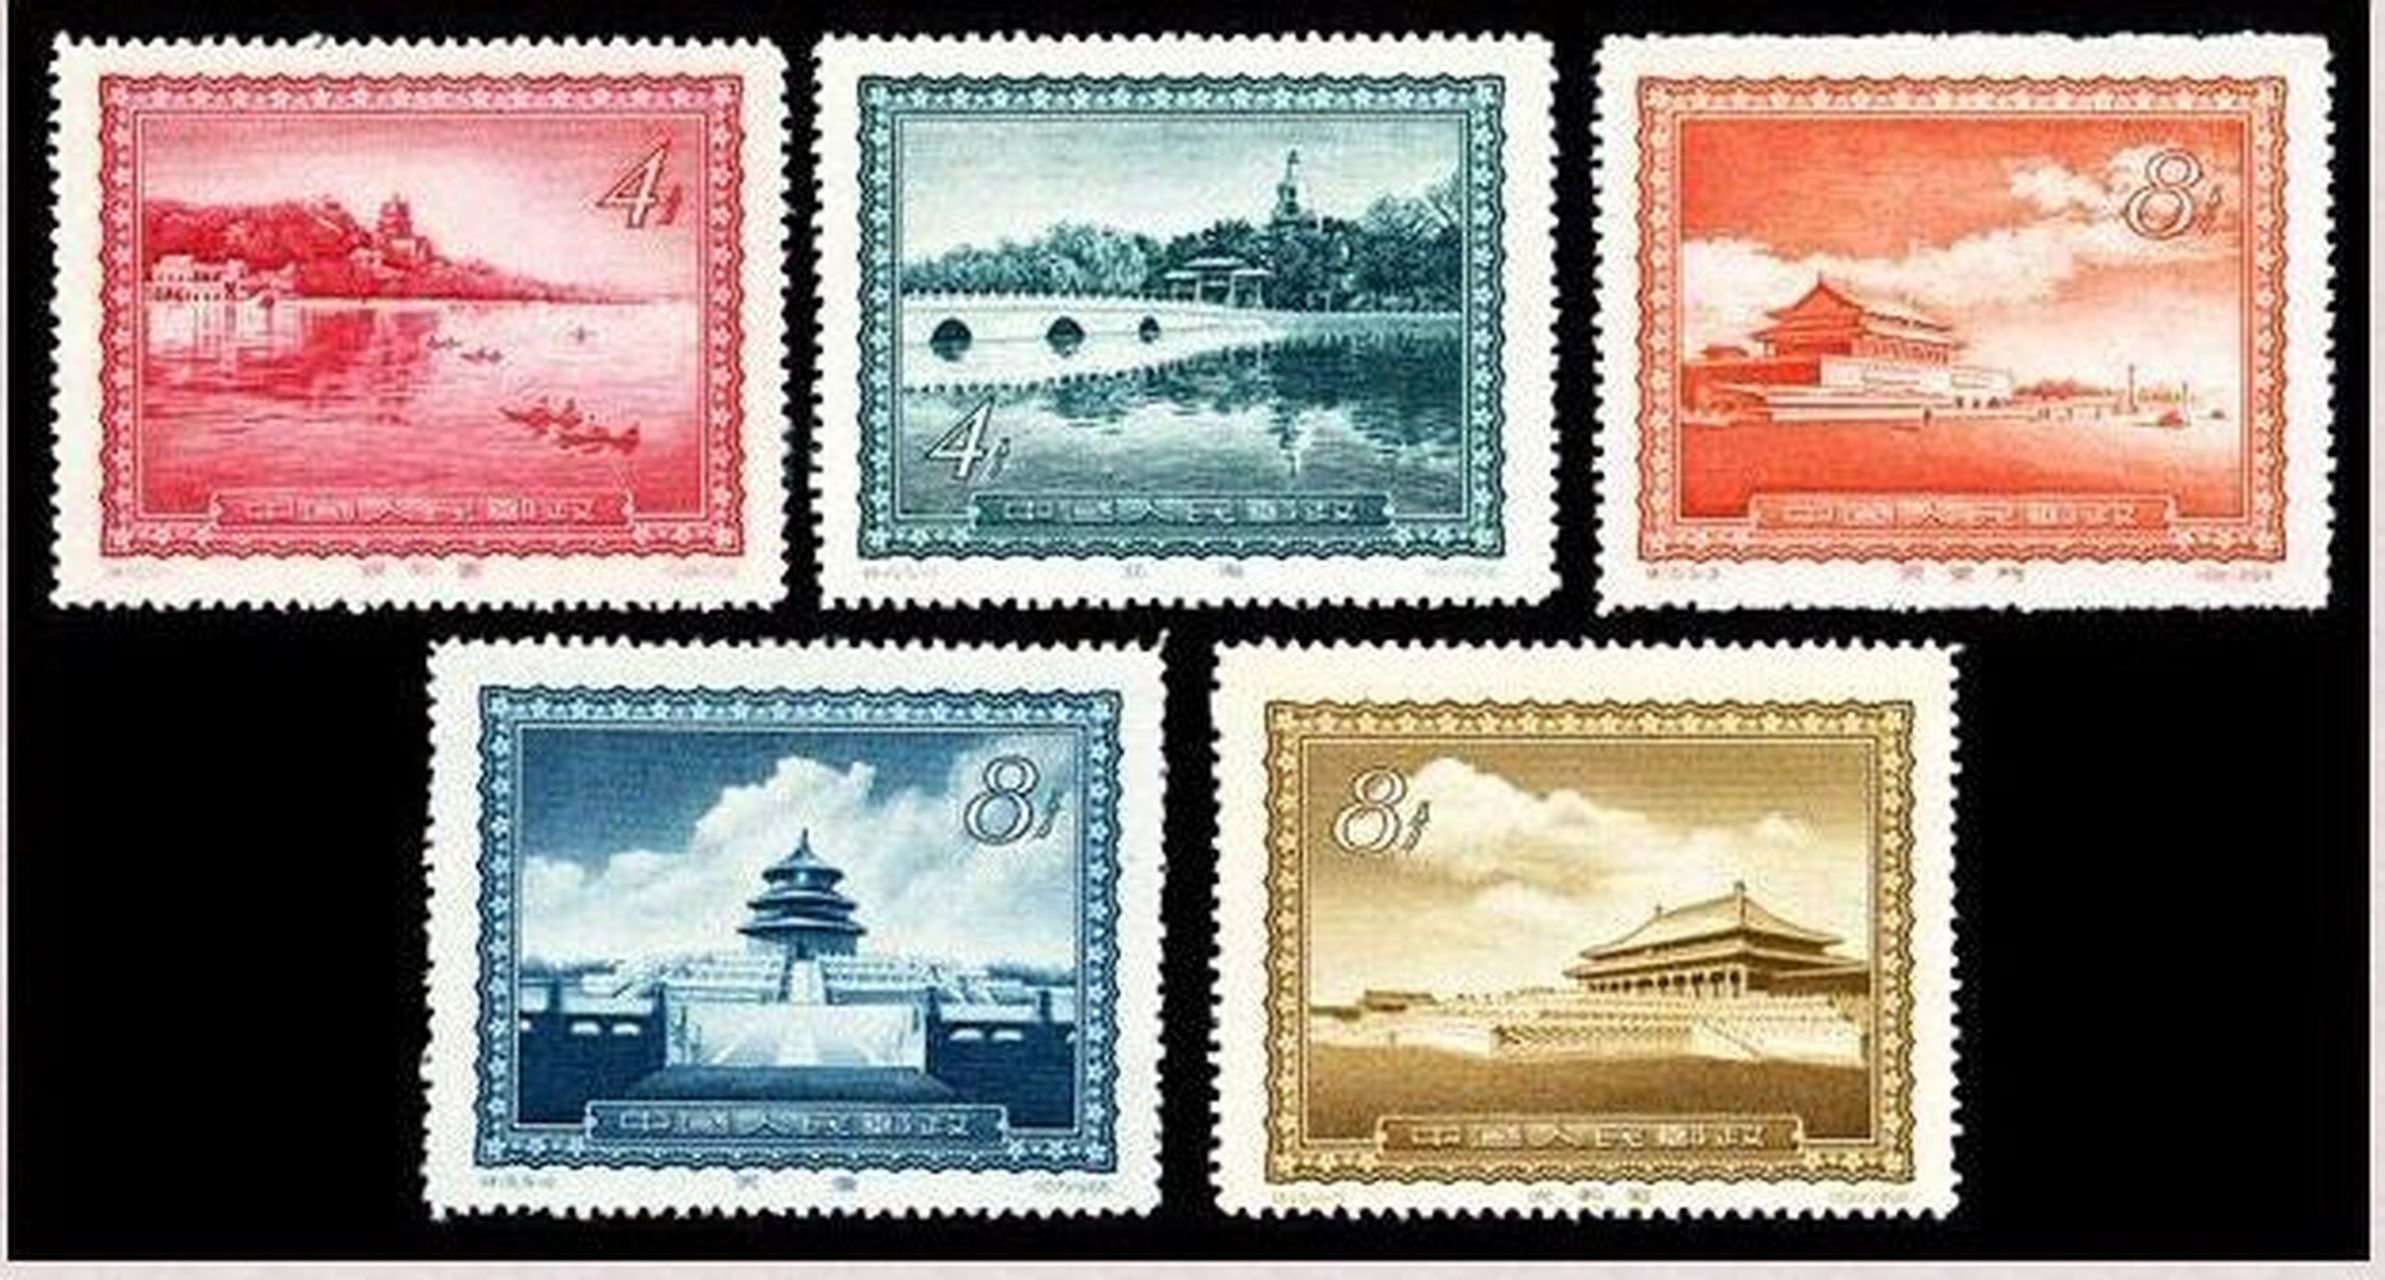 旅邮杂谈:价值百万的天安门邮票 最近因为天安门风景戳的再现,一些